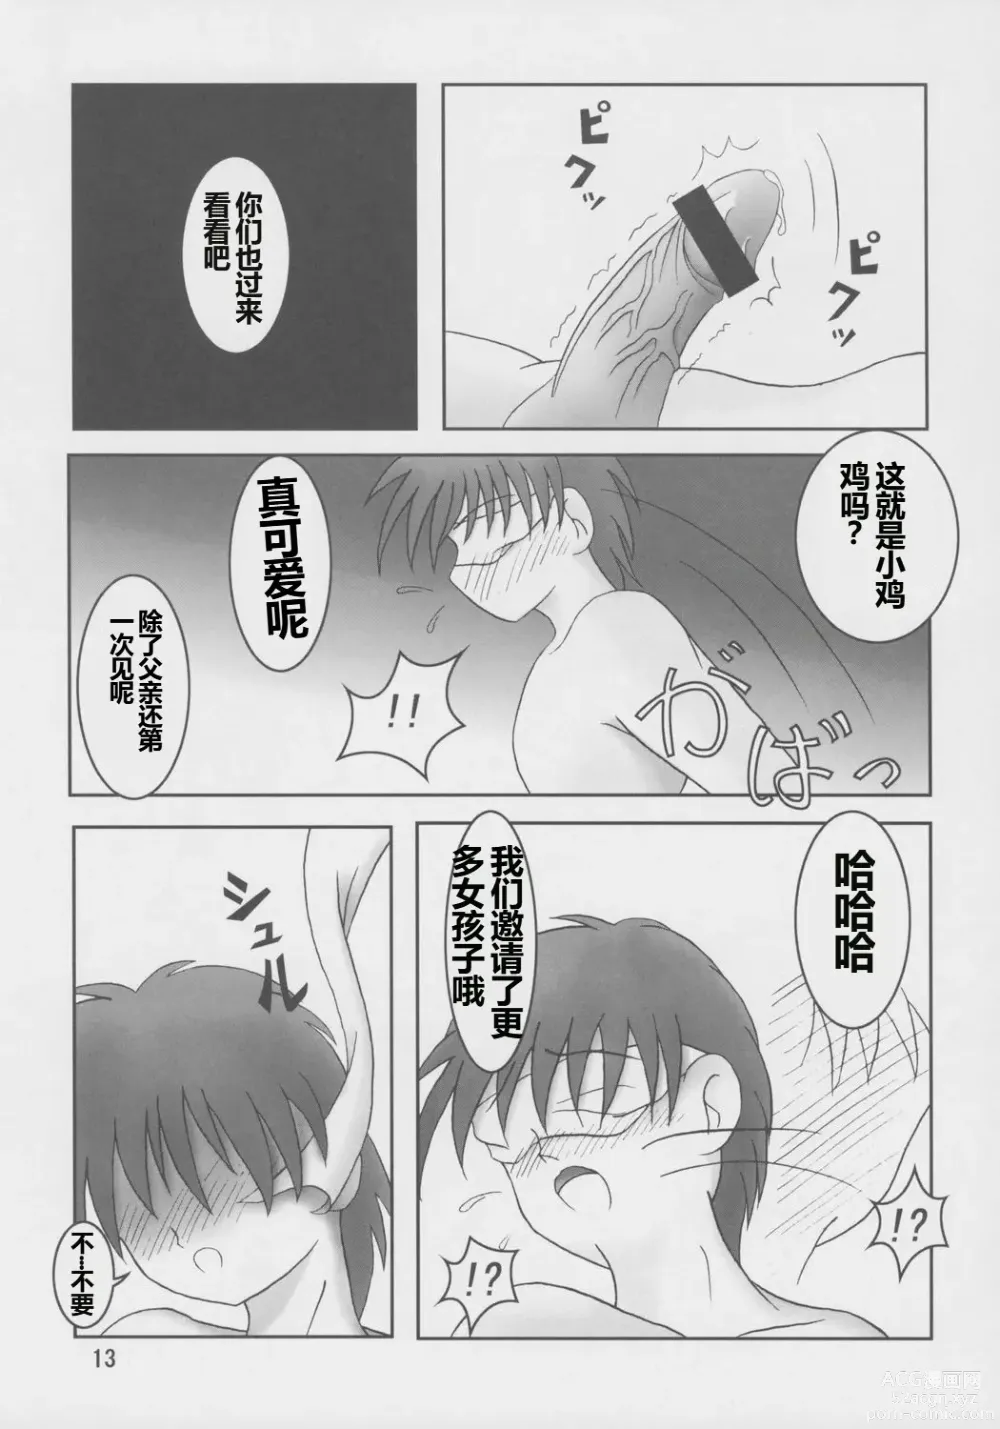 Page 14 of doujinshi Futari wa Zuri Cure Max Hard